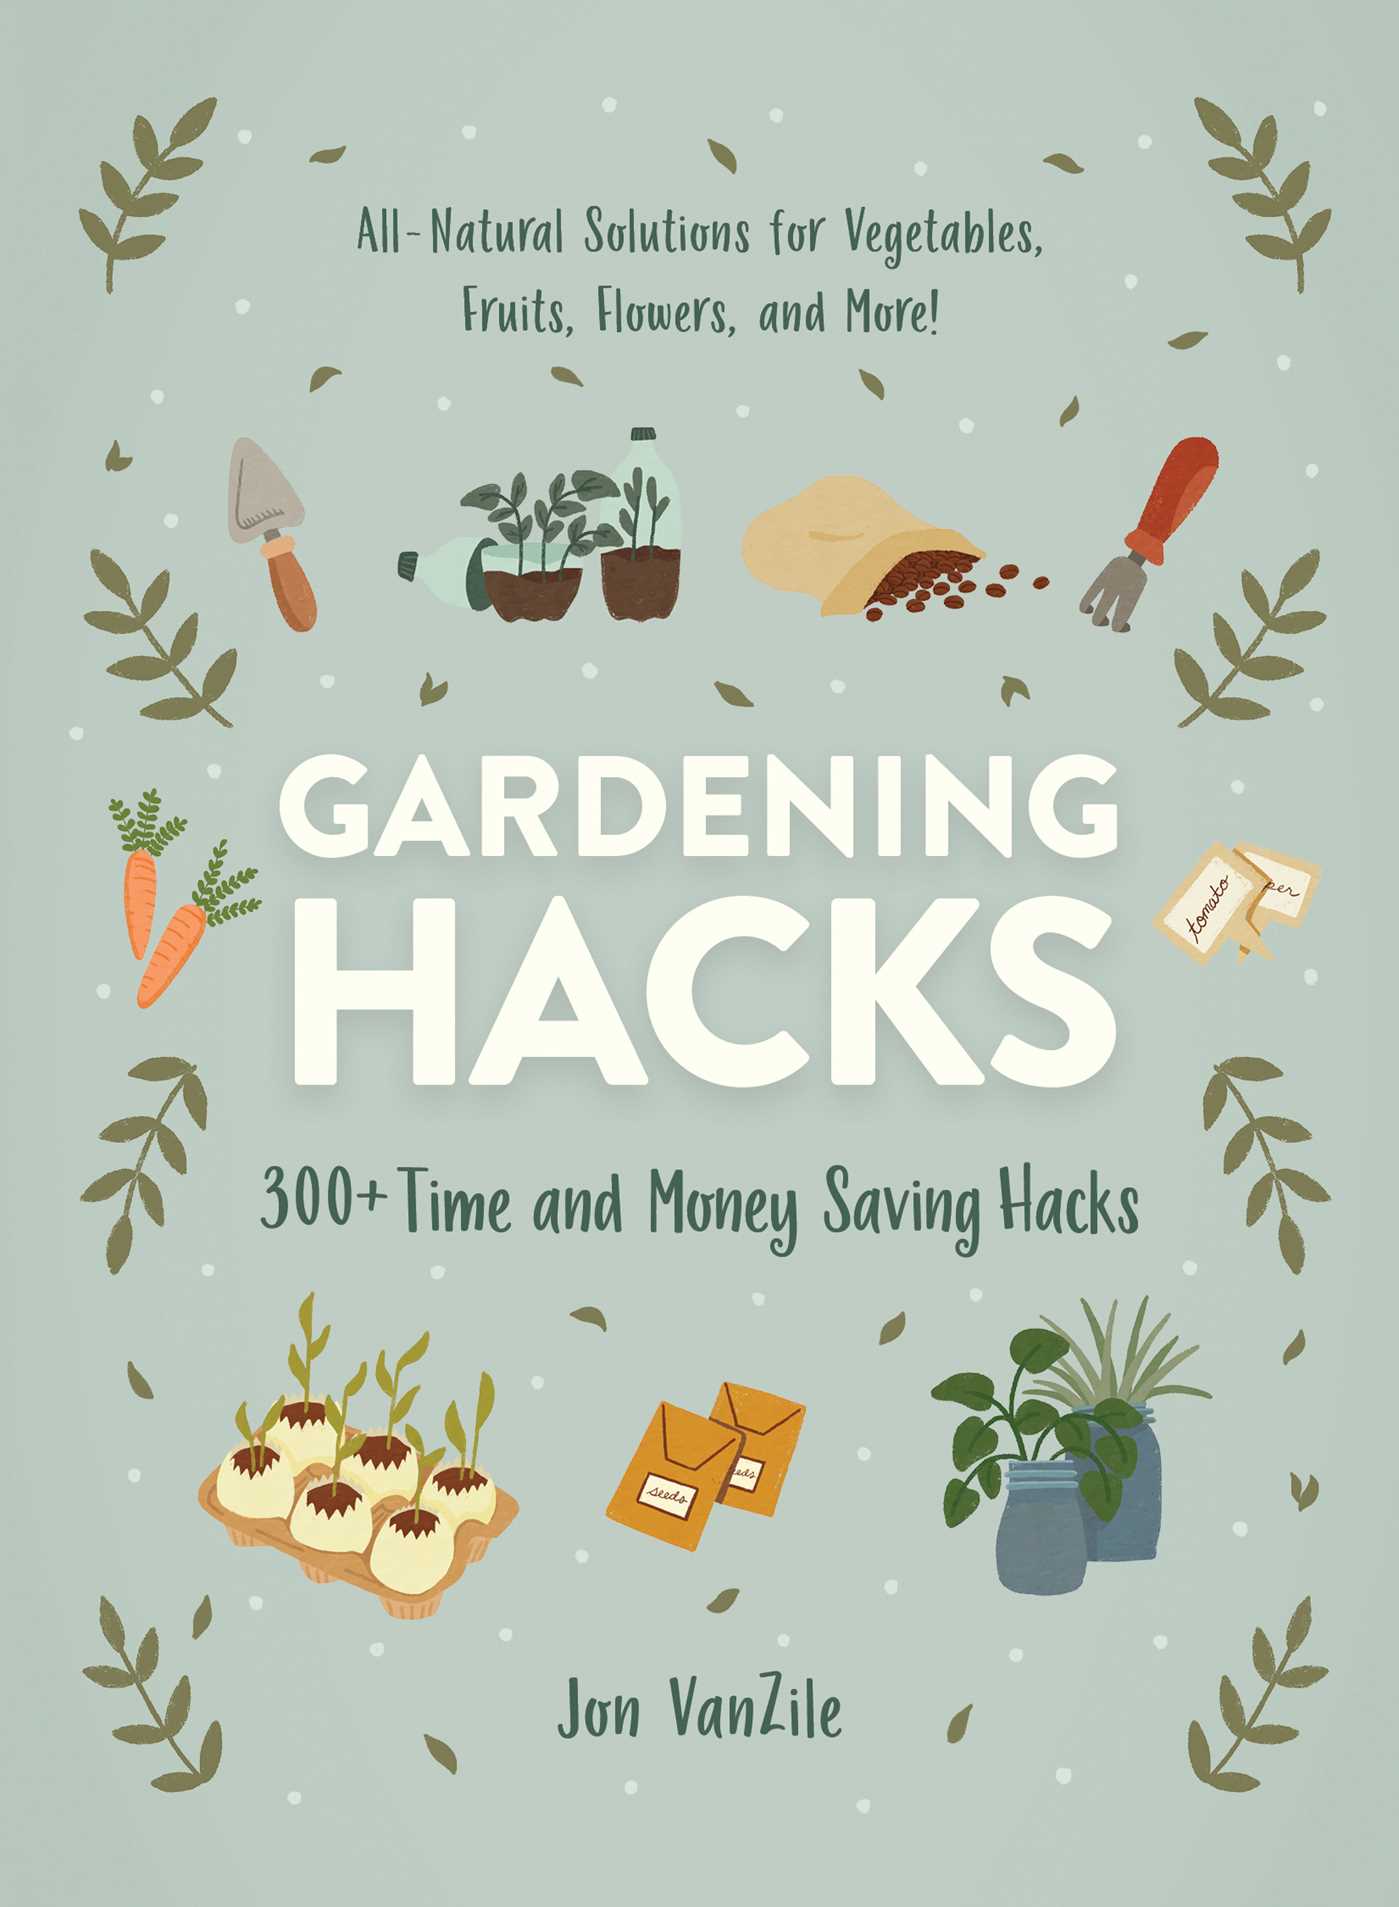 Image for "Gardening Hacks"